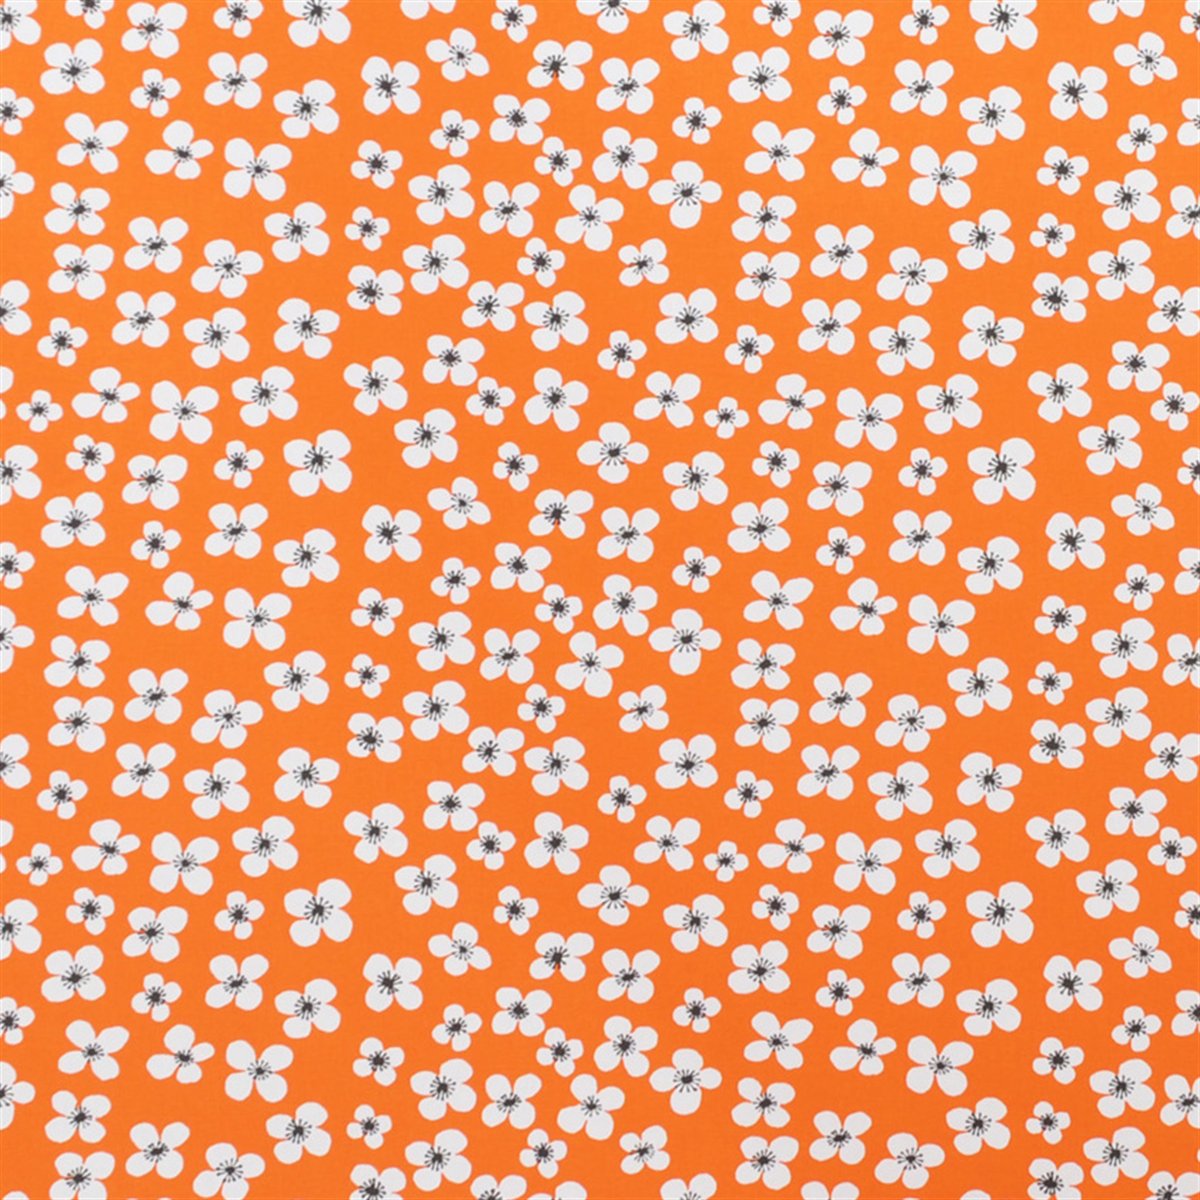 Almedahls Belle Amie tekstil orange orange-hvid